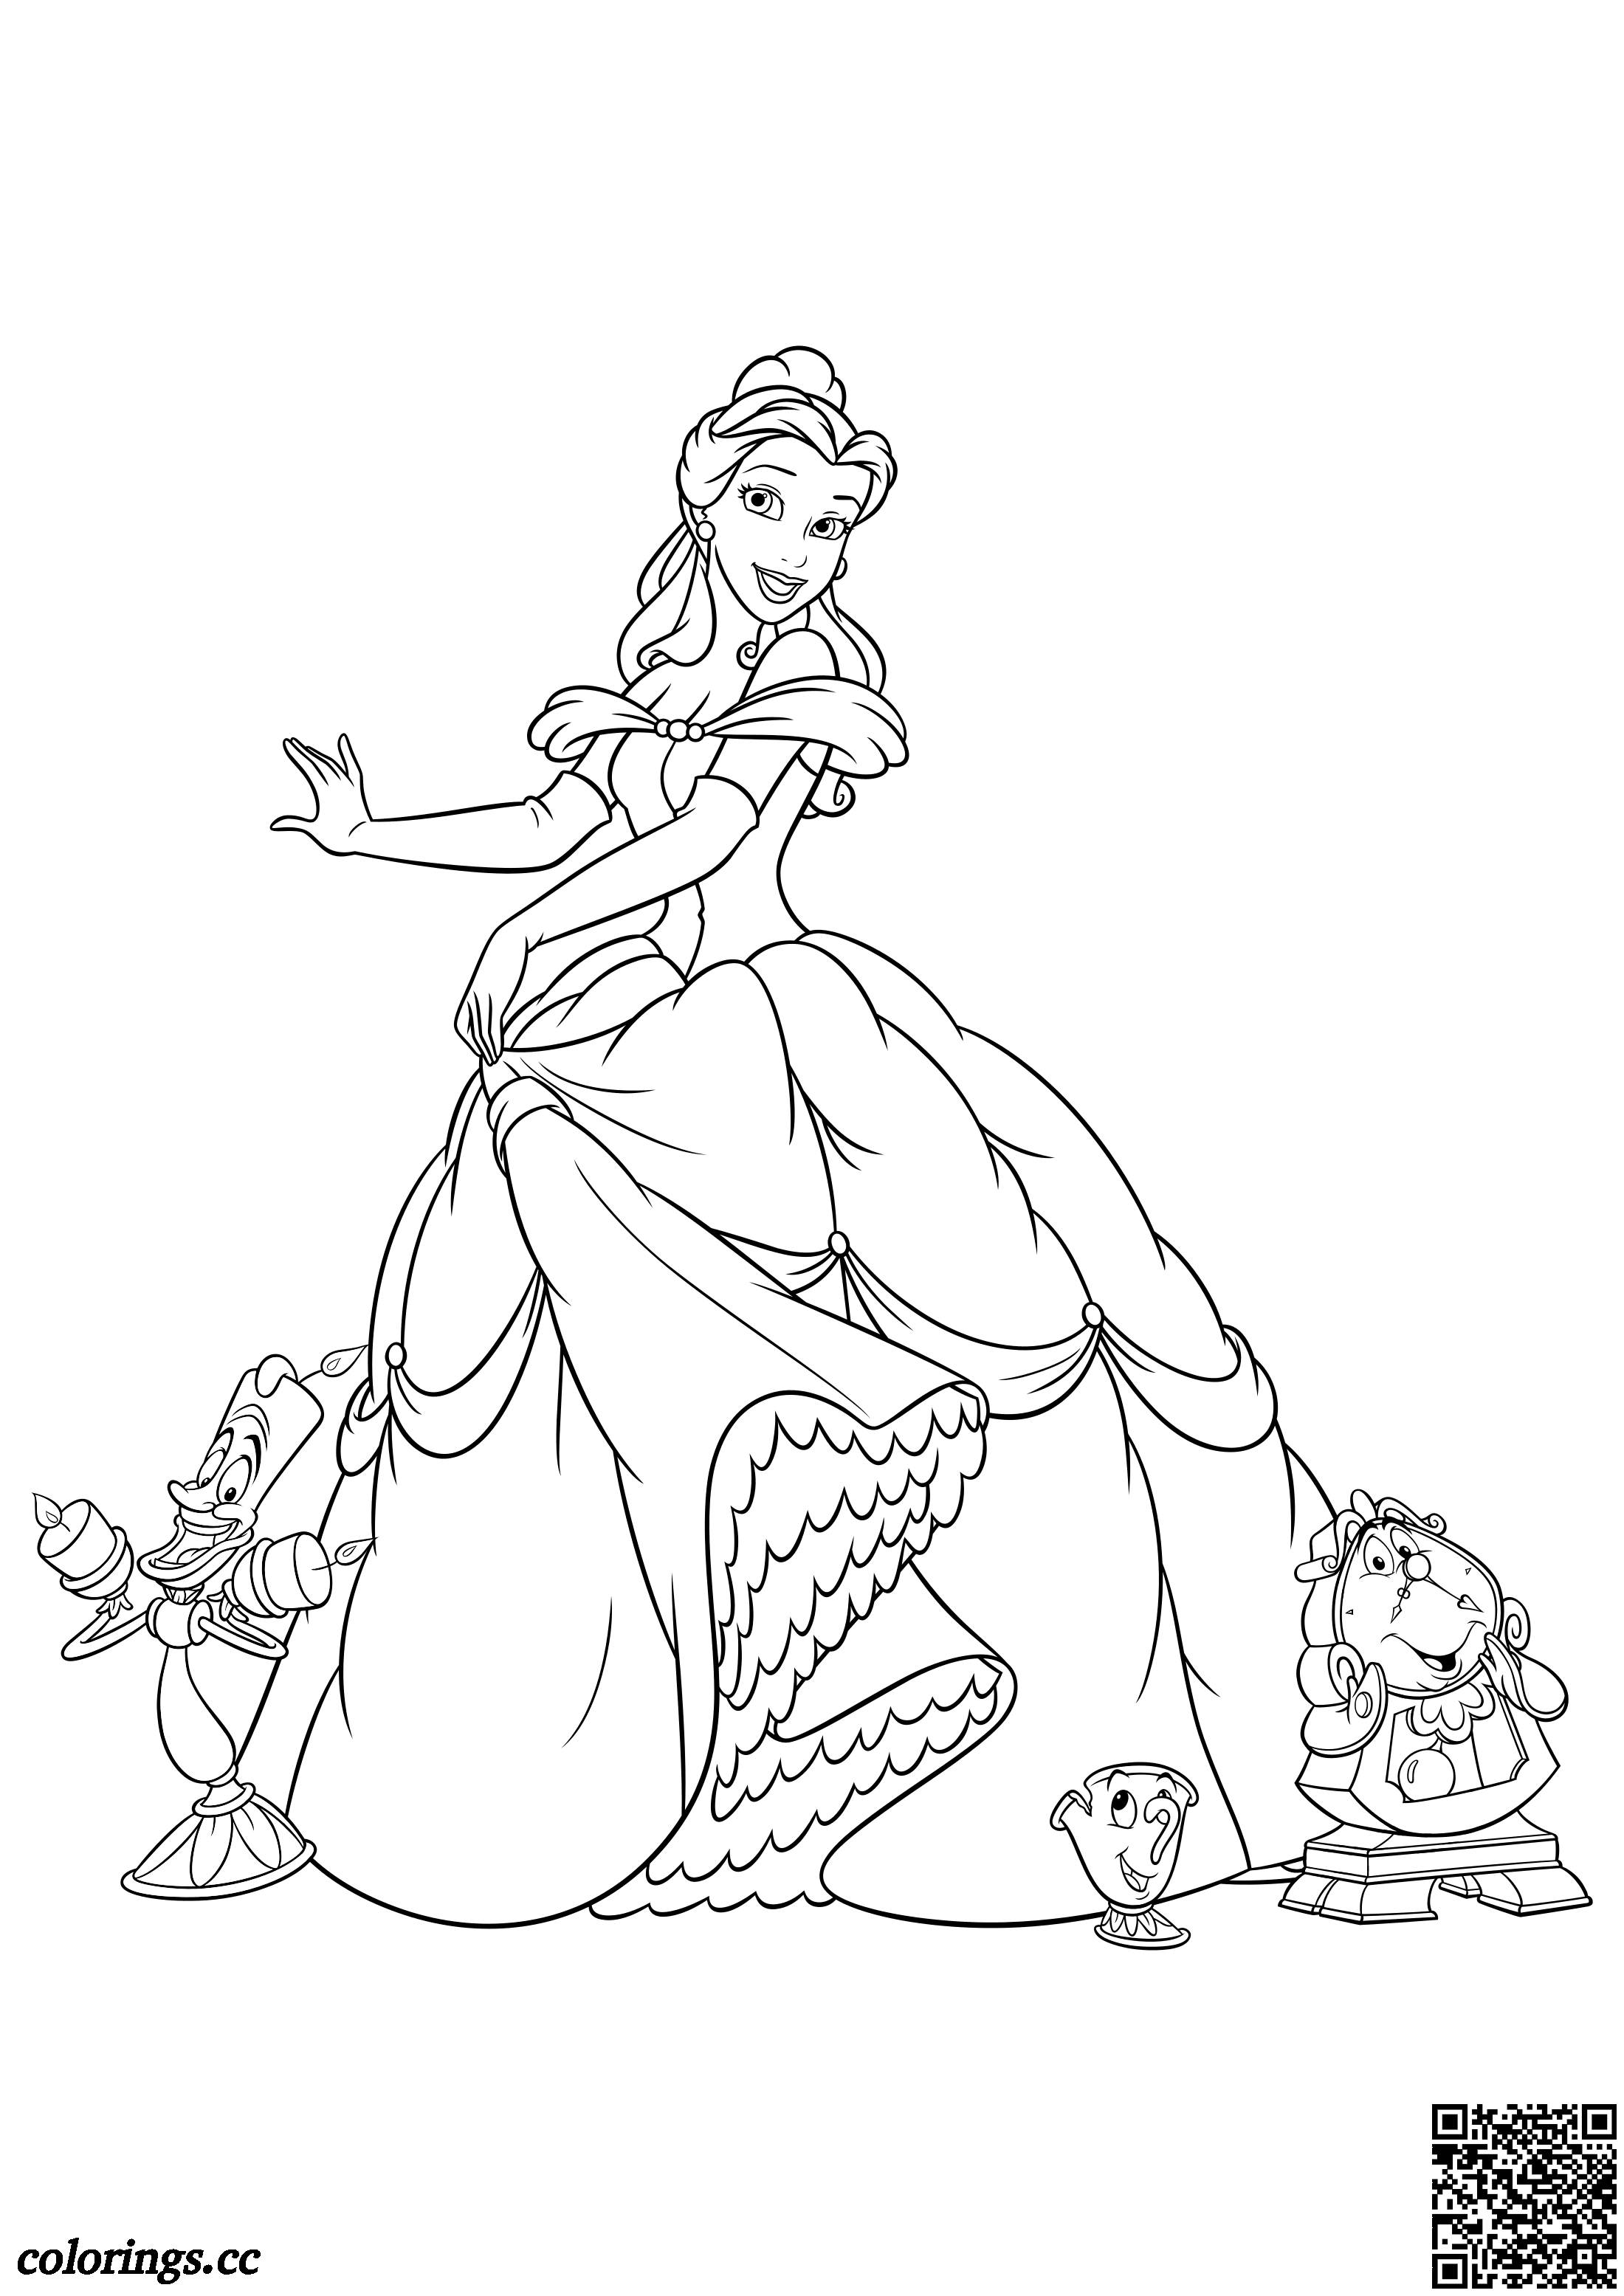 Belle, Lumiere, Chip og Cogsworth til farvelægning, Disney prinsesser tegninger til farvelægning - Colorings.cc